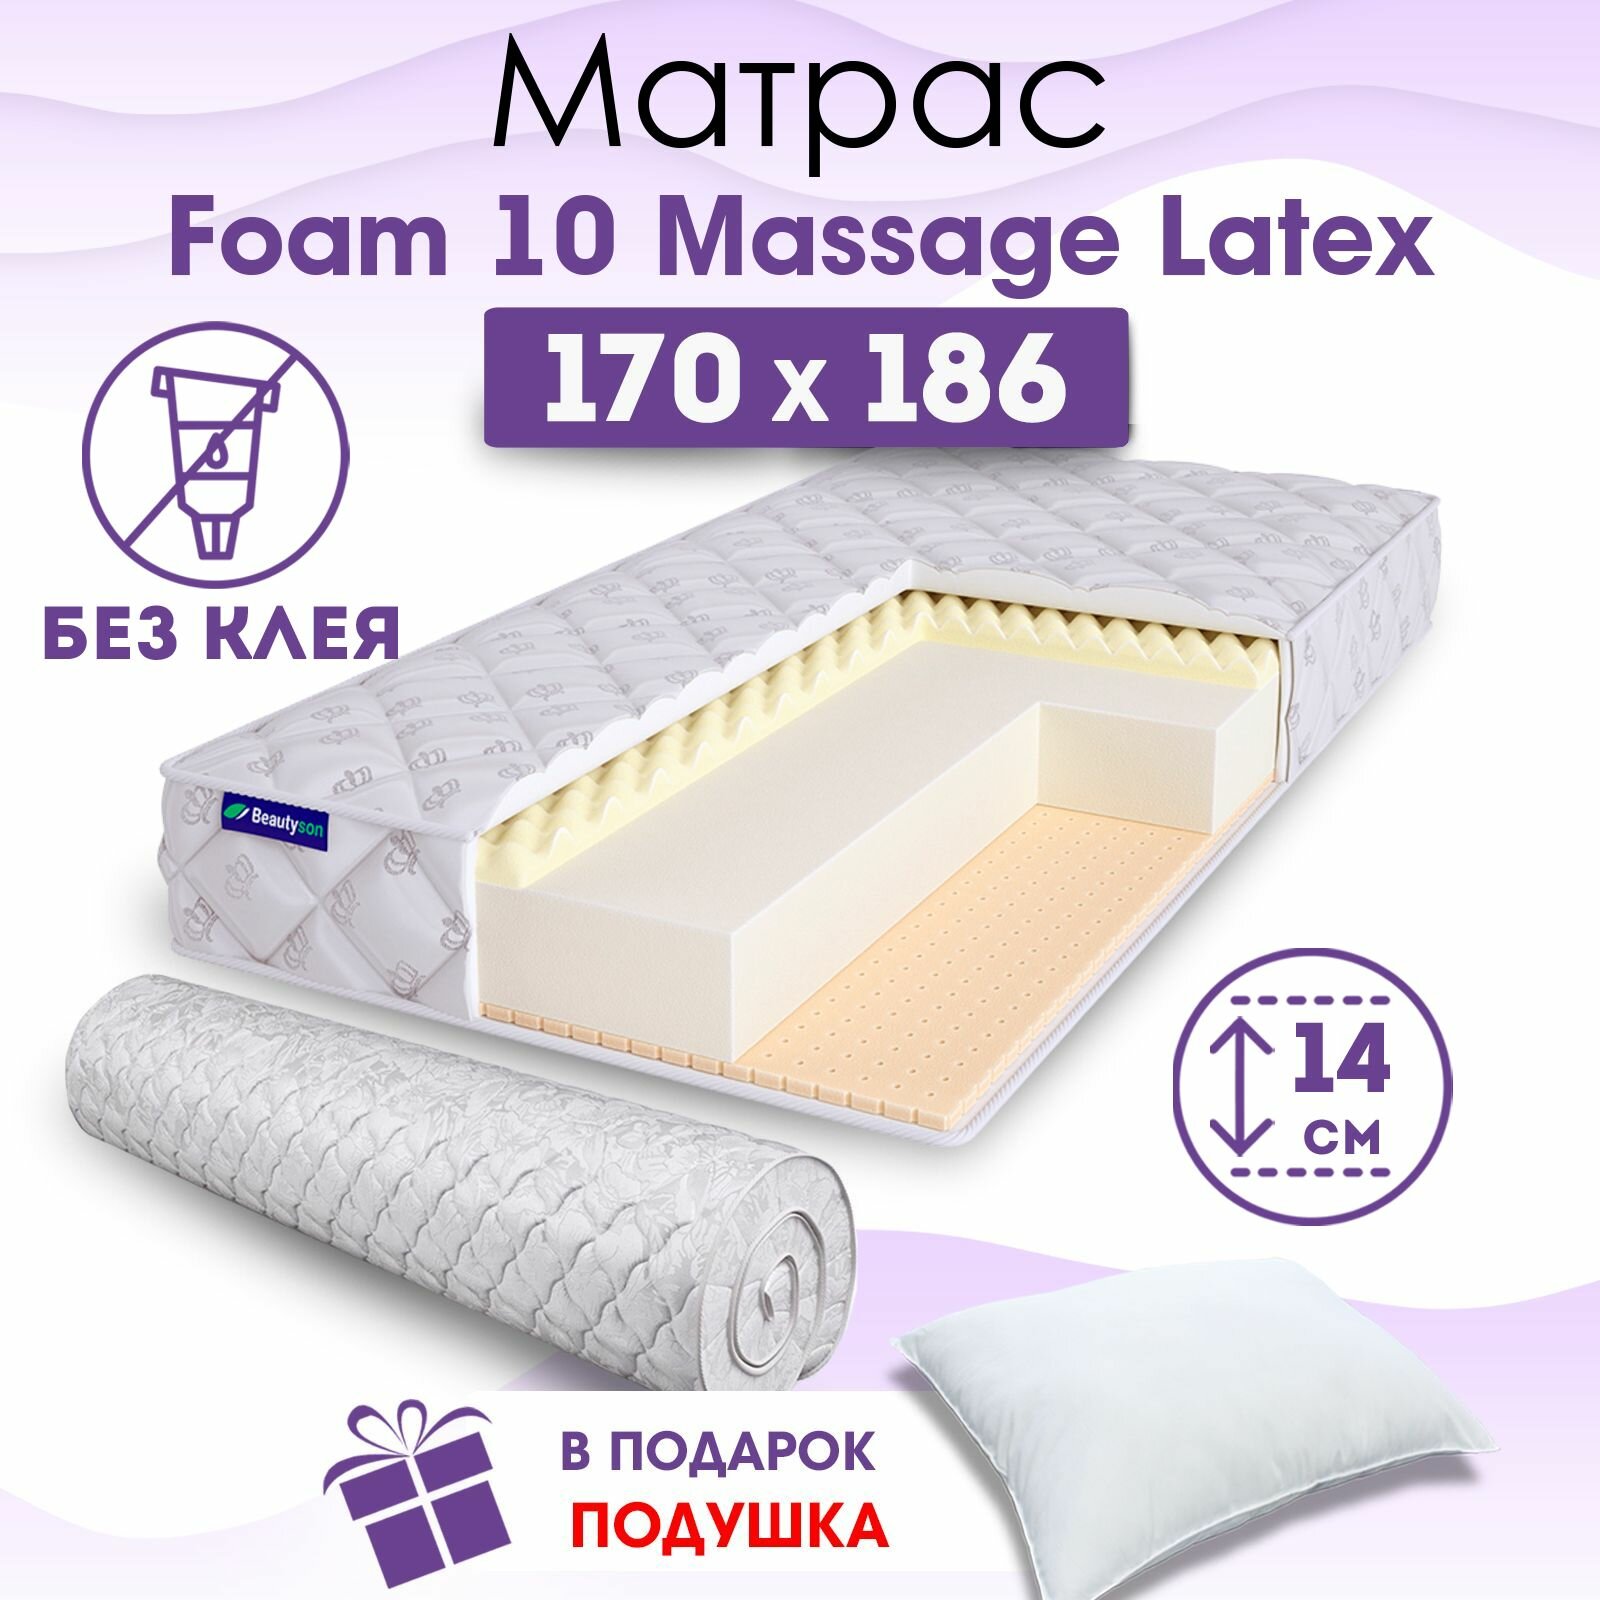 Ортопедический матрас Beautyson Foam 10 Massage Latex без клея, 170х186, 14 см, беспружинный, двухспальный, на кровать, для дивана, мягкий, не высокий